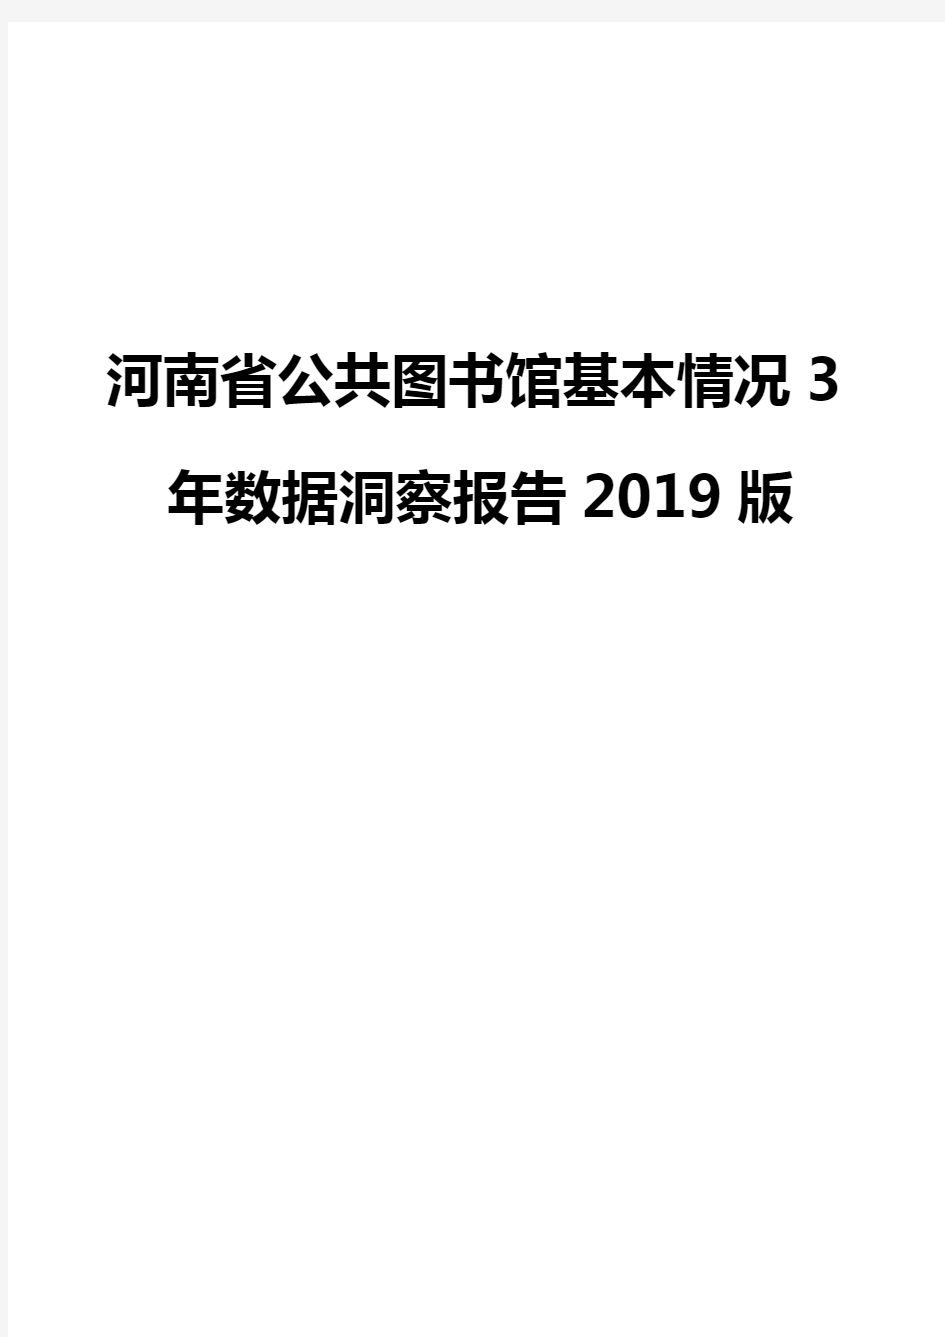 河南省公共图书馆基本情况3年数据洞察报告2019版